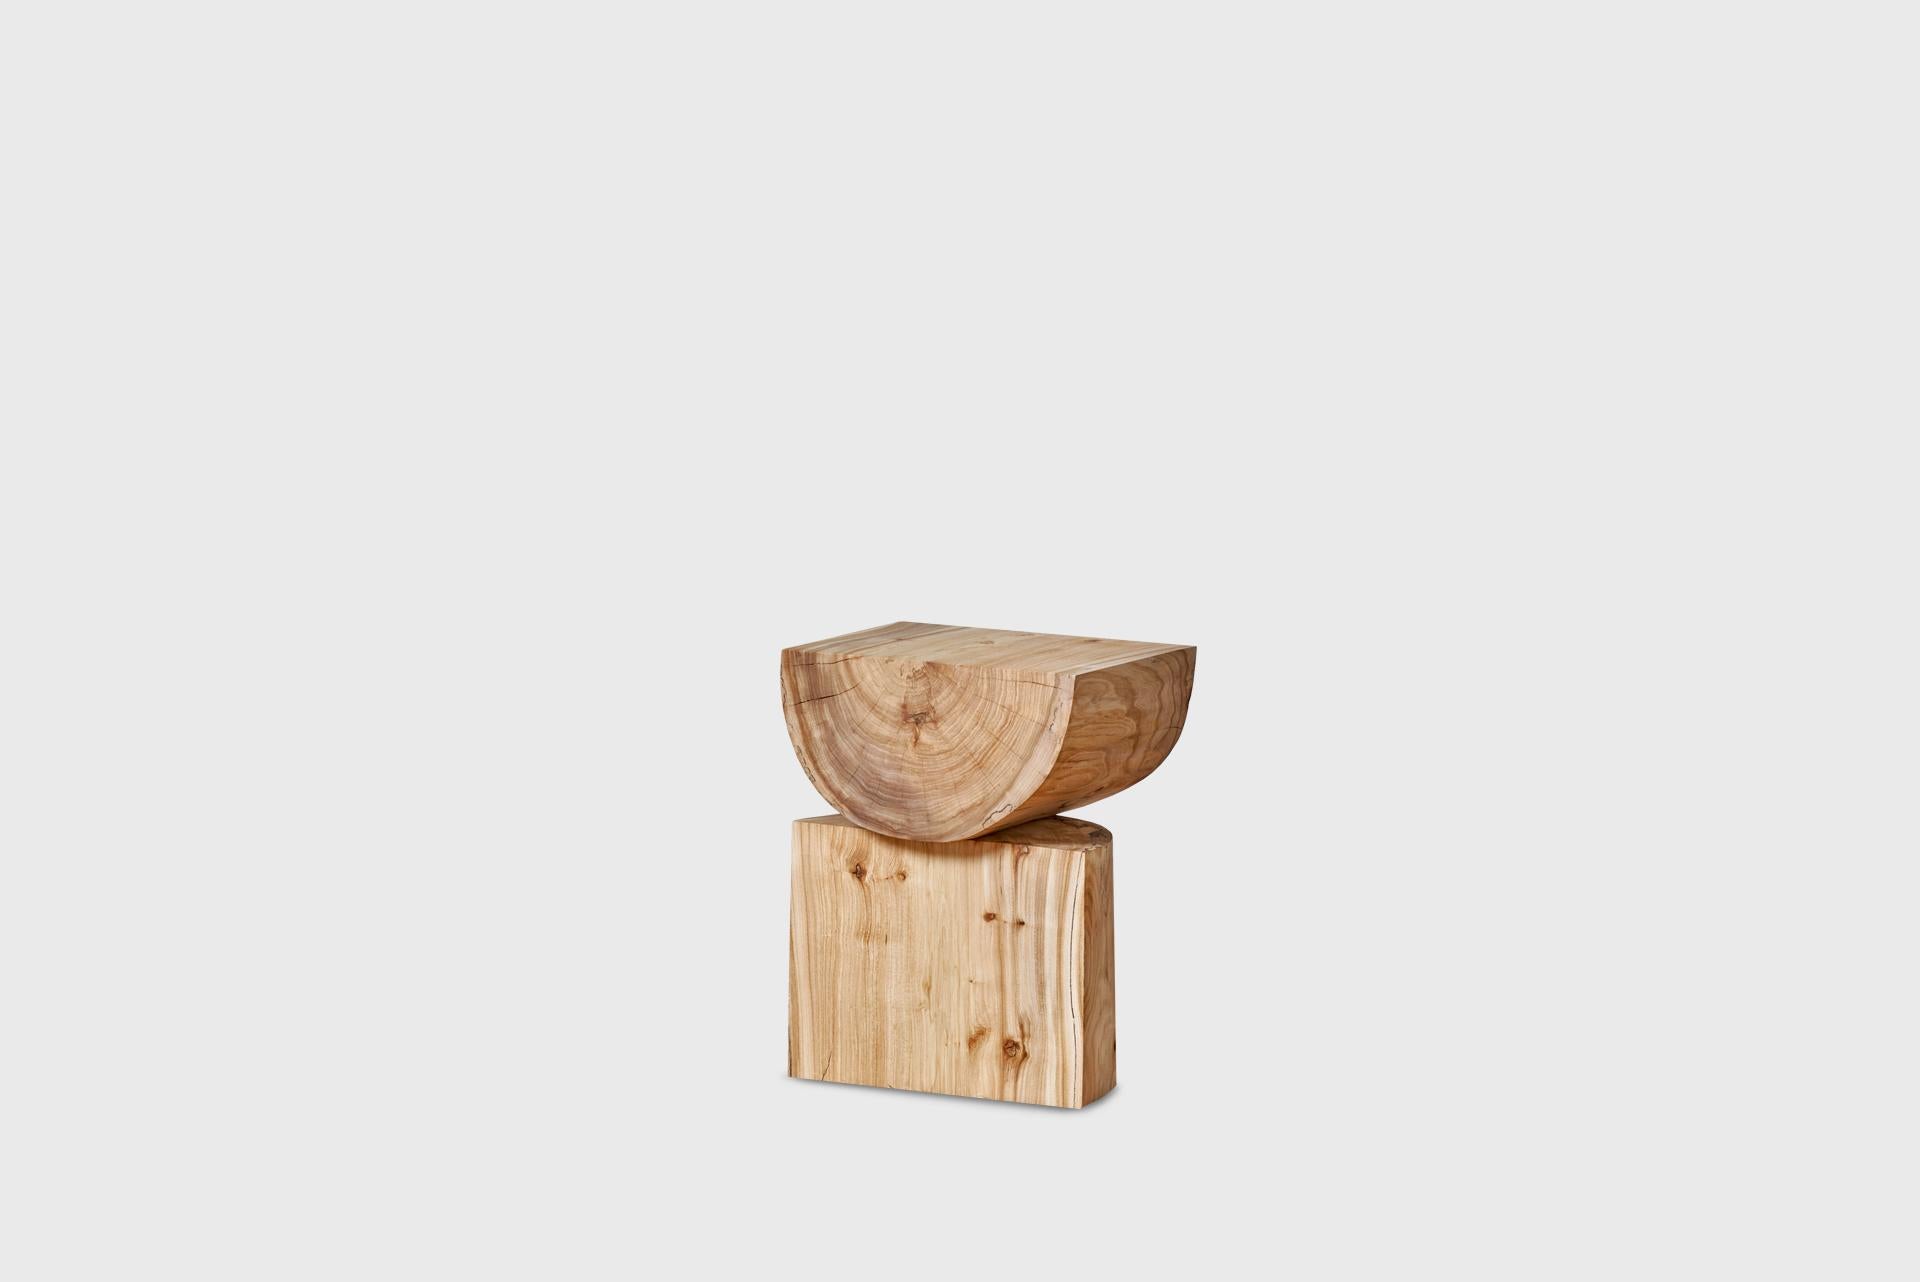 plain wood stool